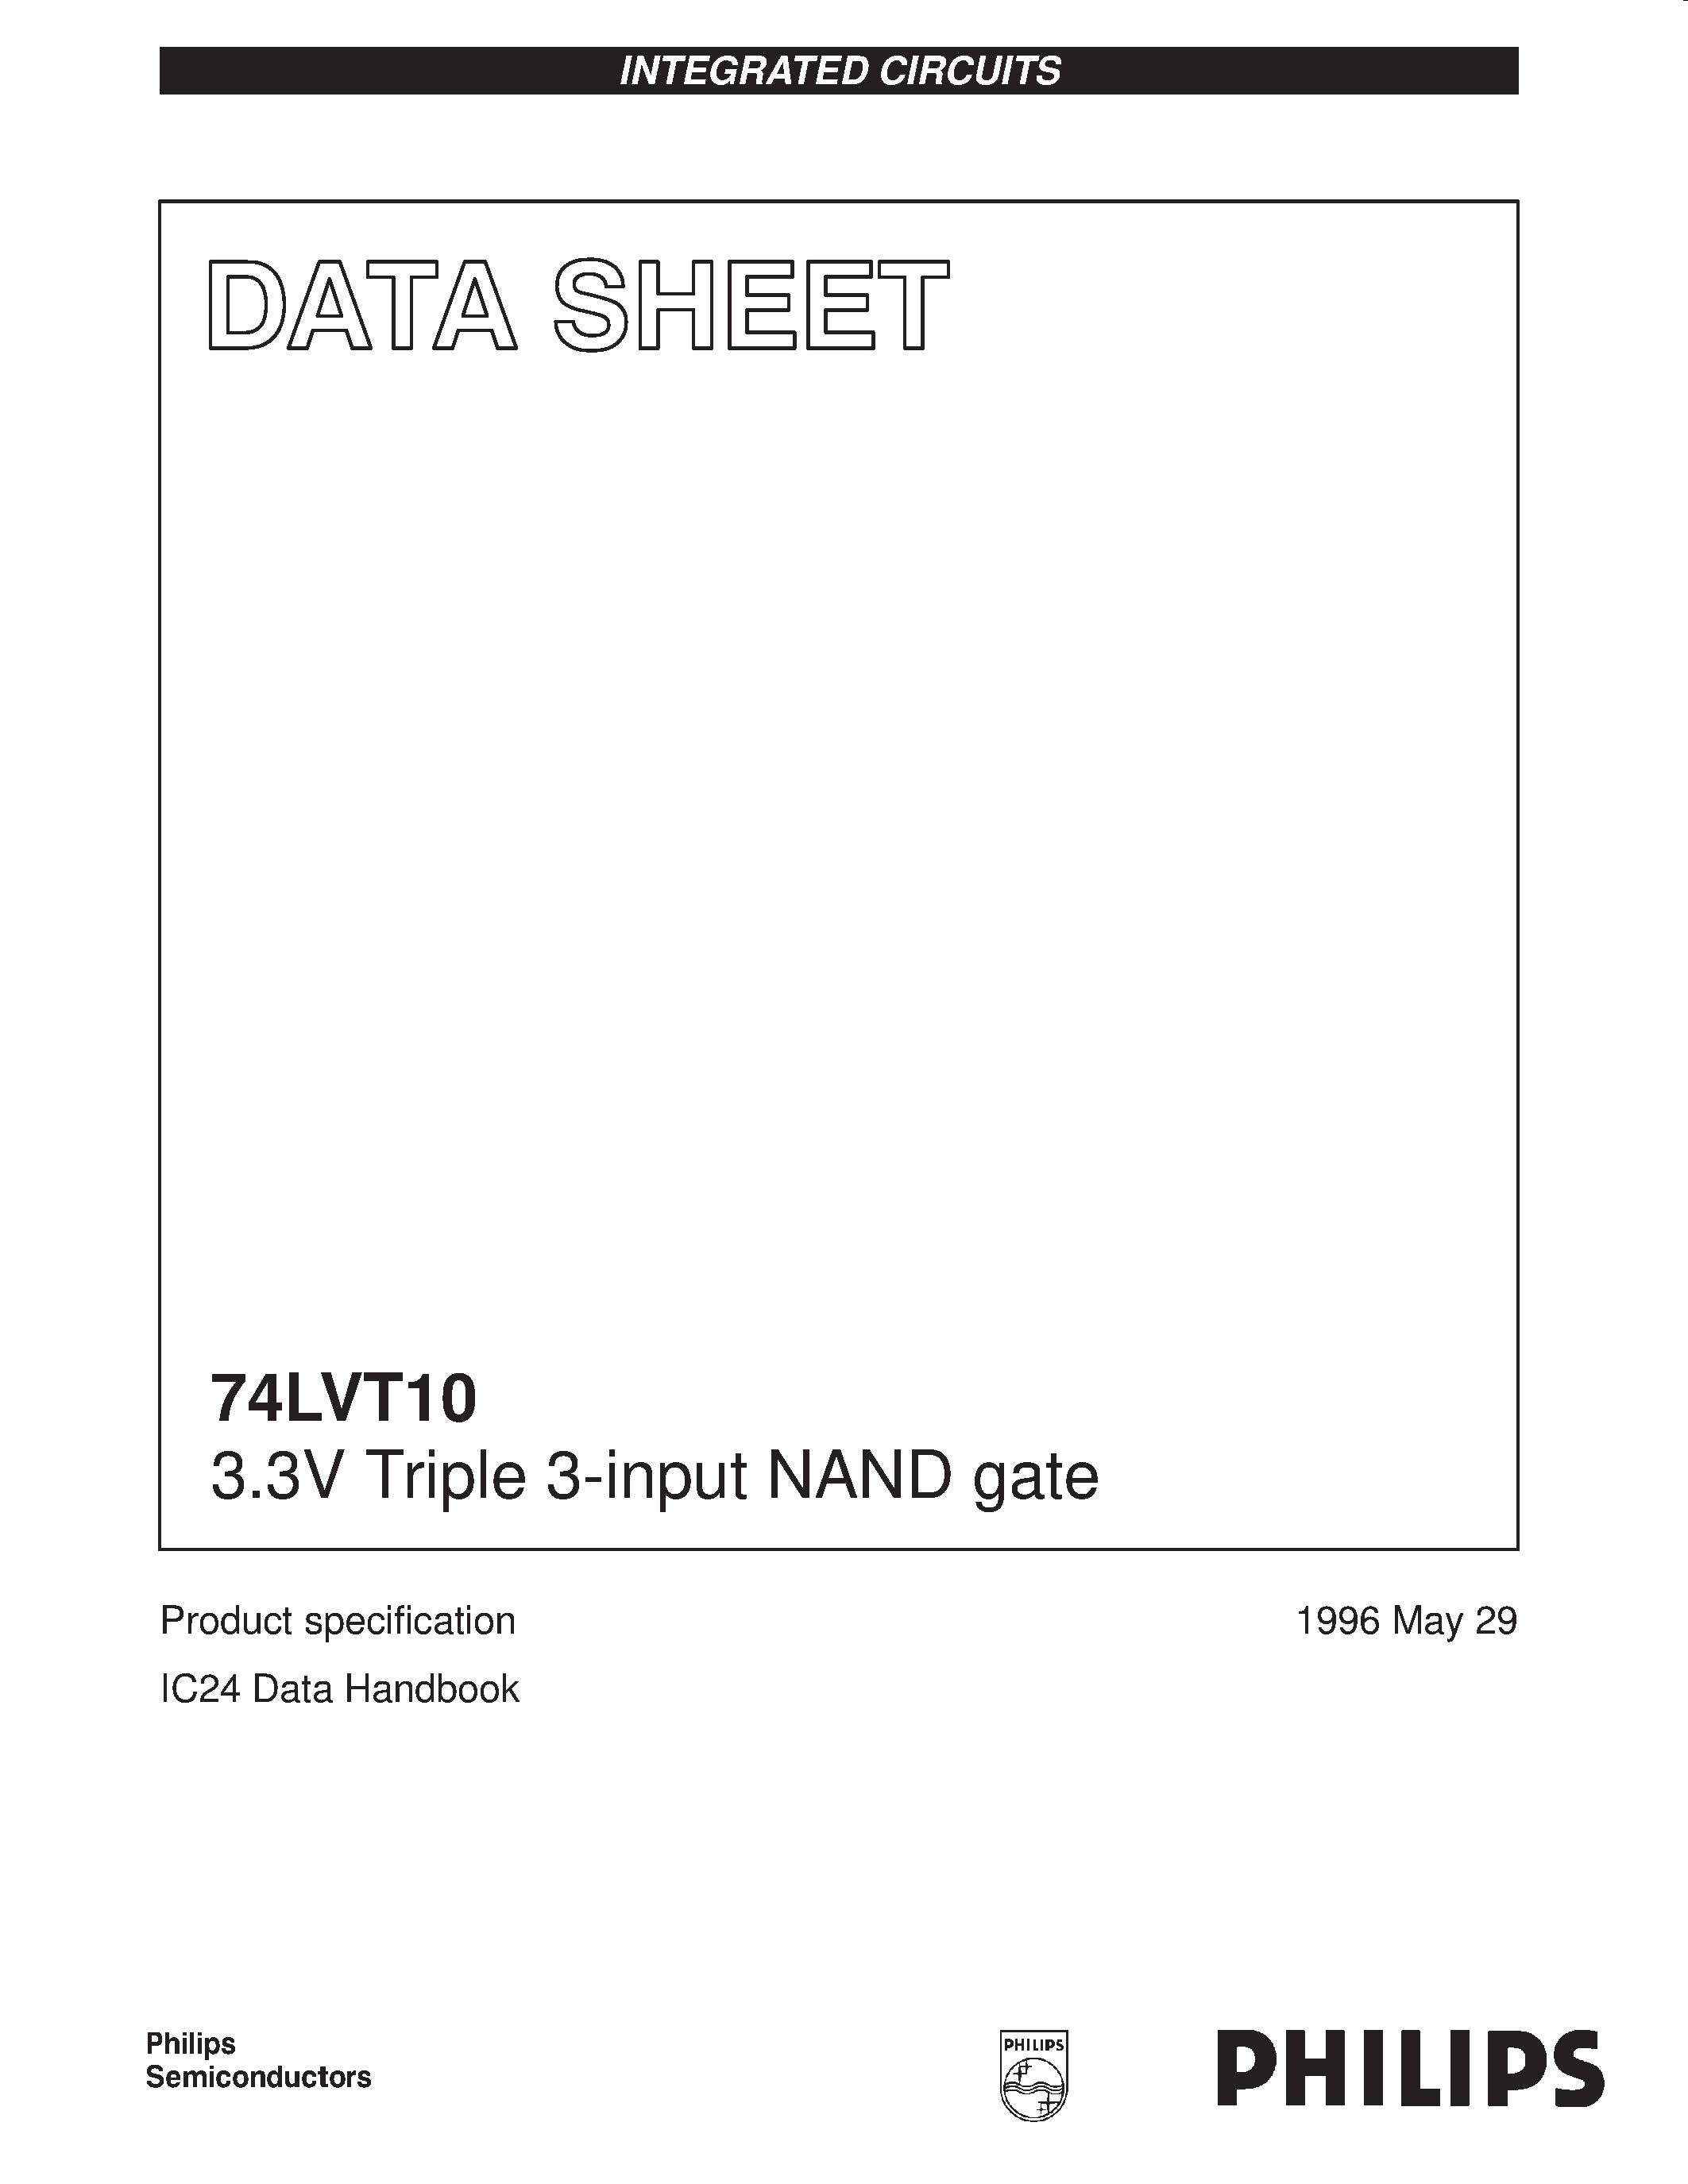 Даташит 74LVT10 - 3.3V Triple 3-input NAND gate страница 1